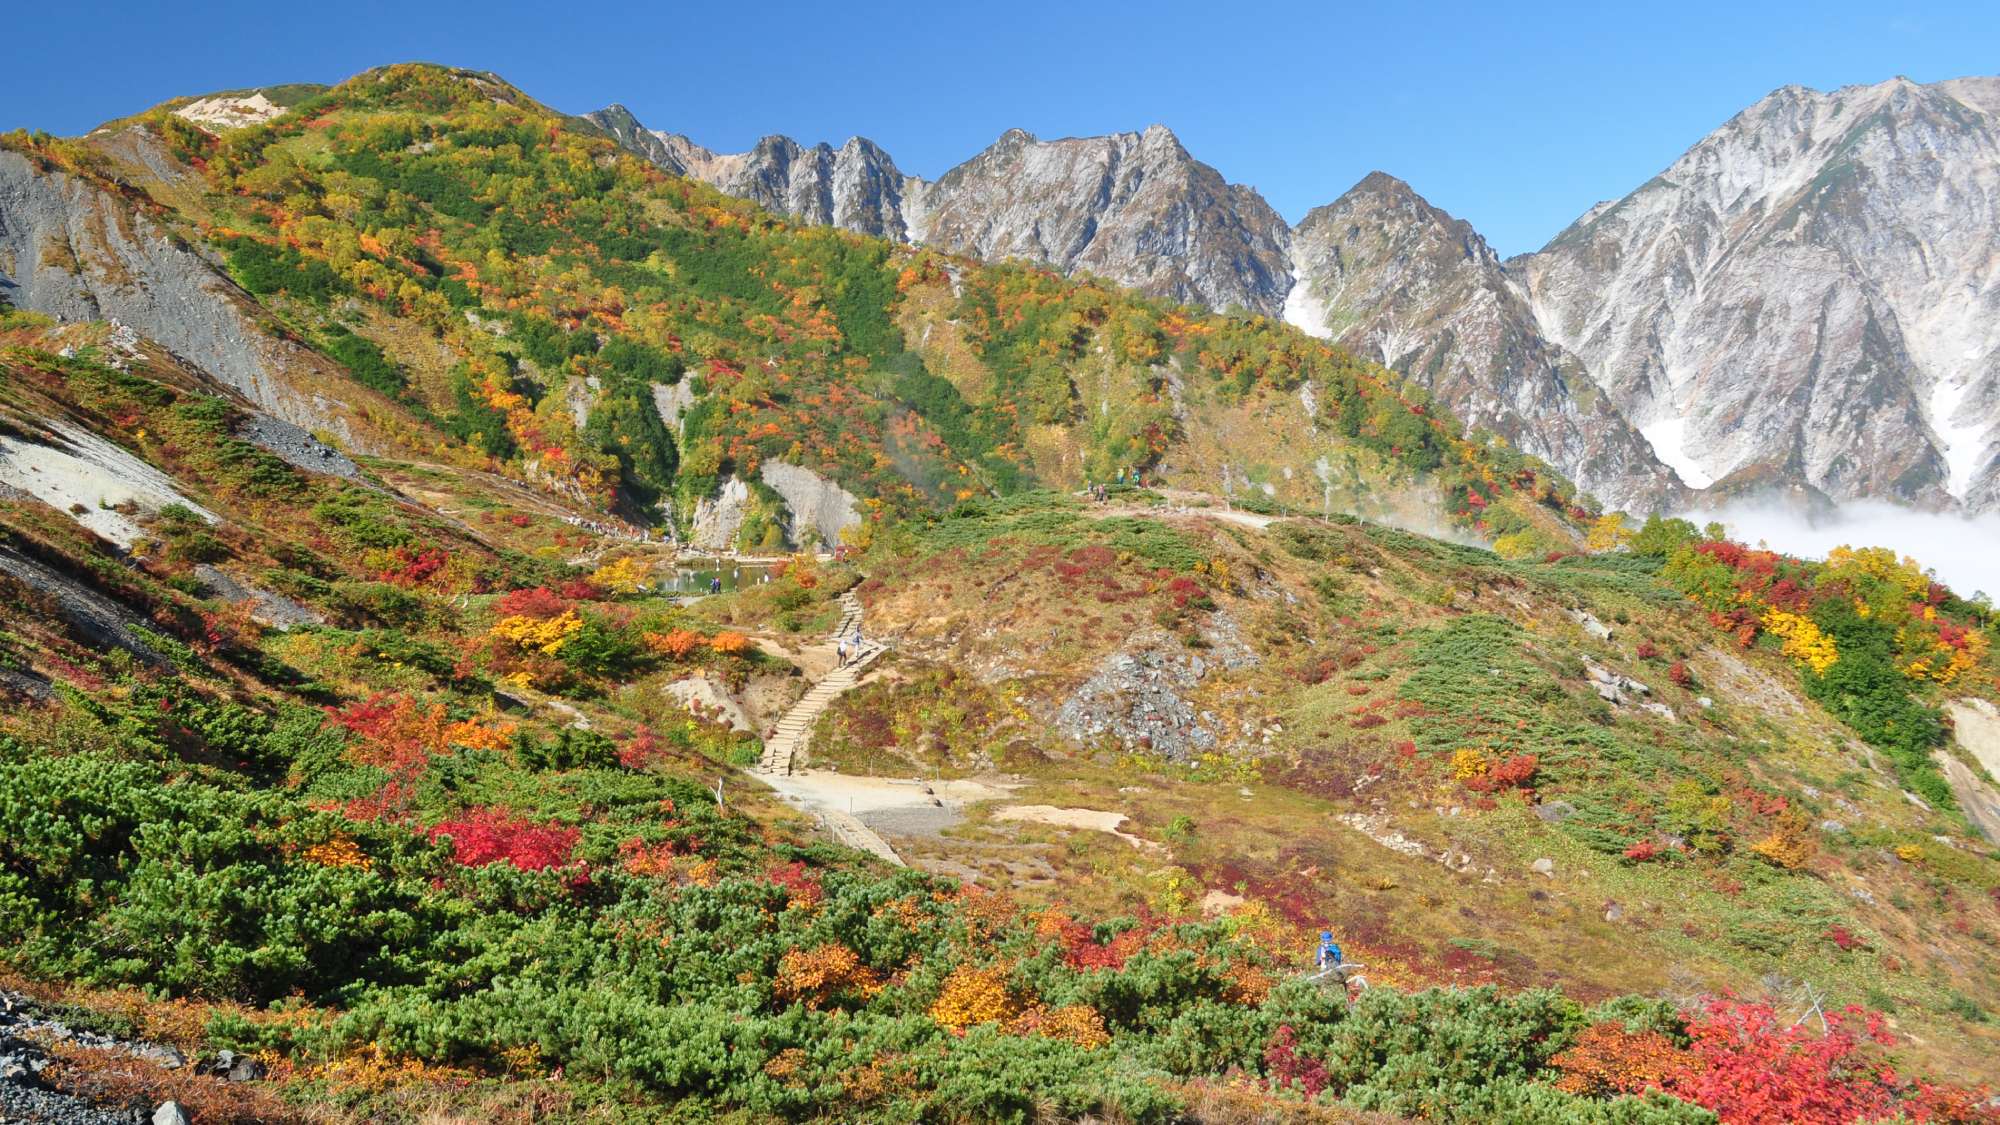 ・【八方尾根/秋】雄大な山々と色とりどりの紅葉がお楽しみいただけます(白馬村観光協会提供)